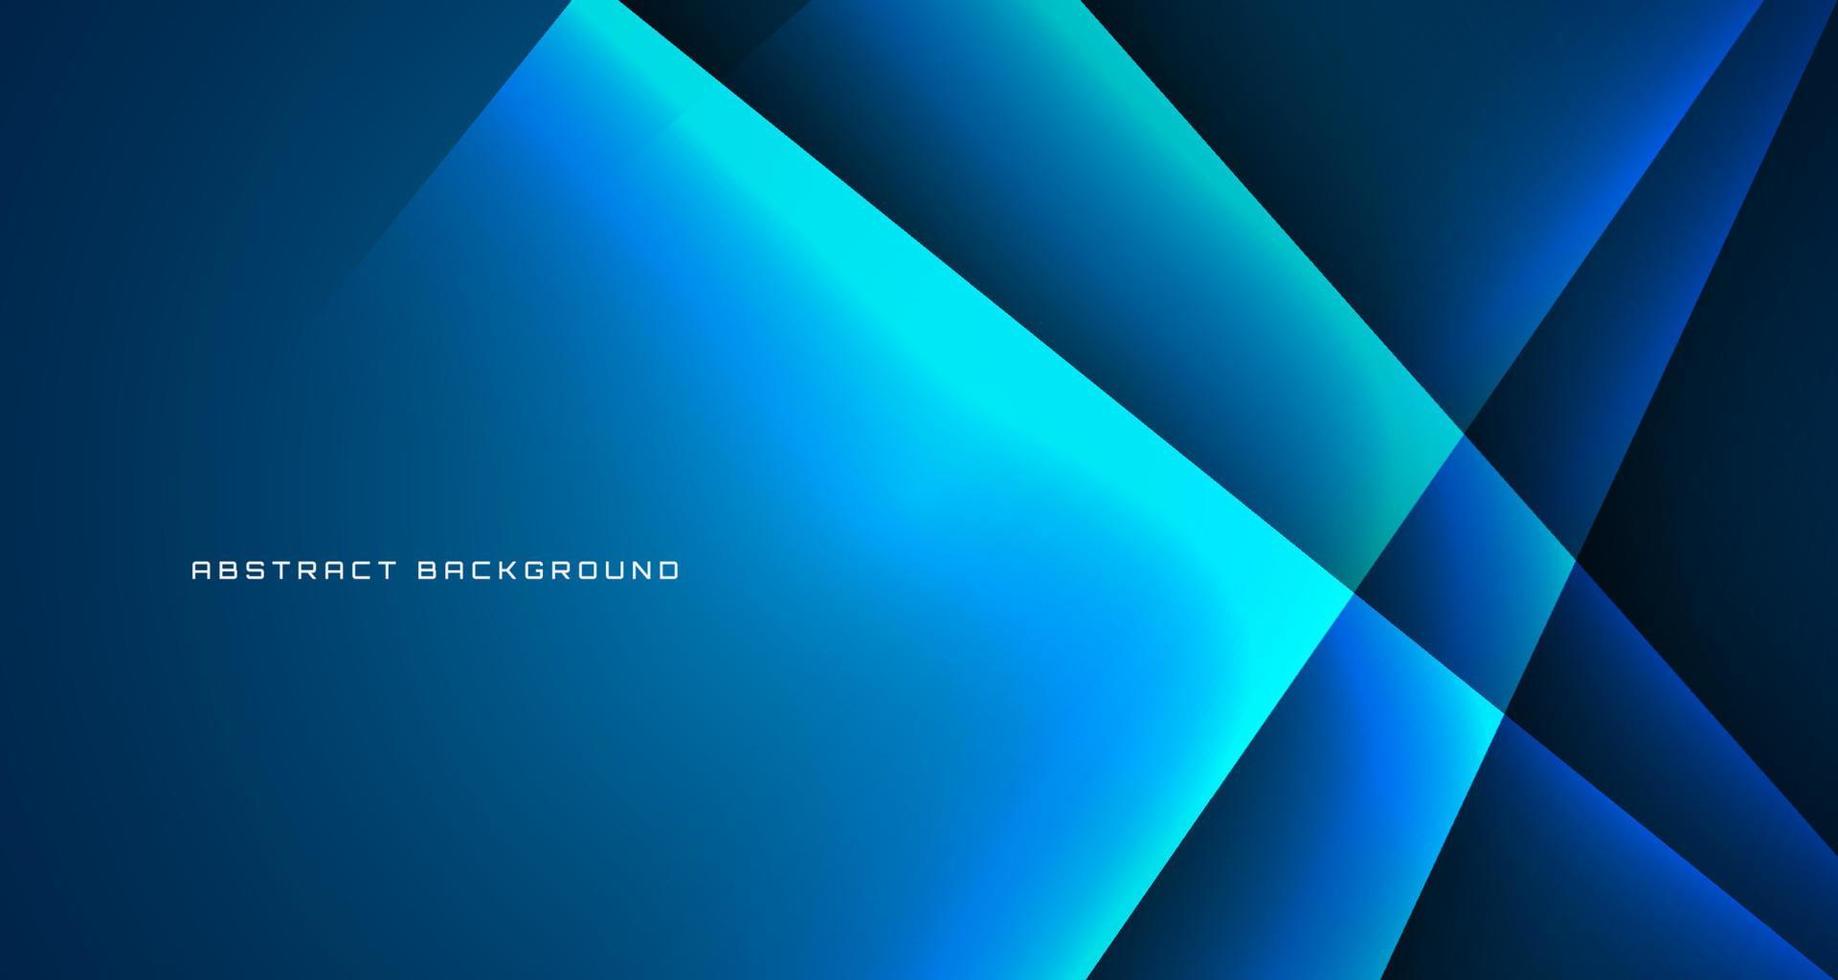 Capa superpuesta de fondo abstracto tecno azul 3d en espacio oscuro con decoración de línea clara. concepto de estilo de recorte de elemento de diseño gráfico para banner, volante, tarjeta, portada de folleto o página de inicio vector